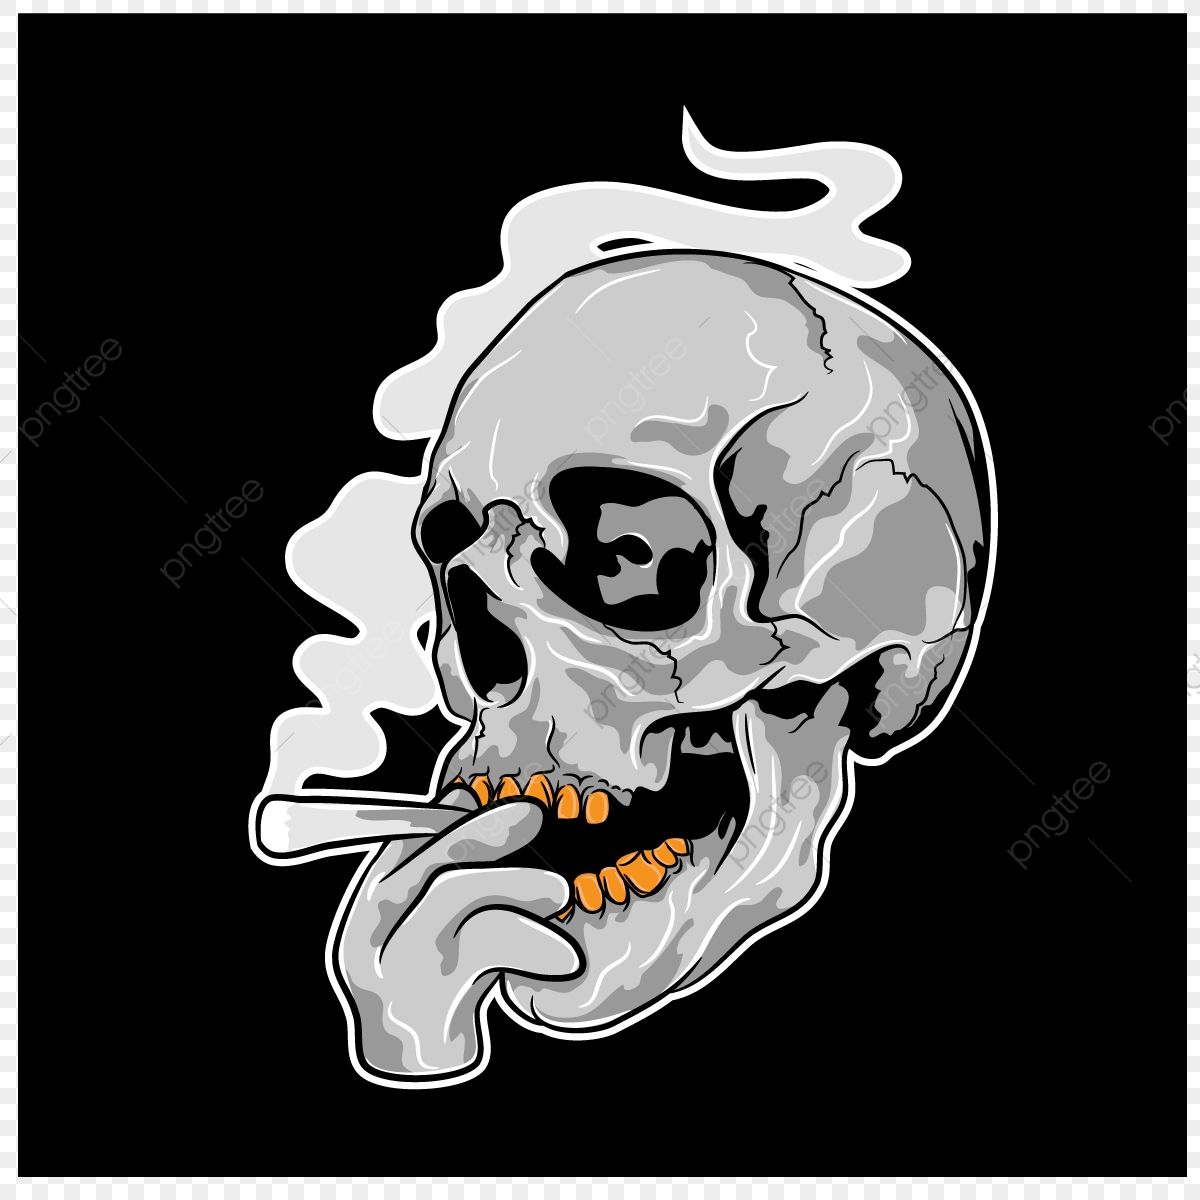 Skulls Clipart Transparent Background, Skull Illustration, Skull Clipart, Smoking, Skull PNG Image For Free Download. Skull illustration, Skull, Illustration